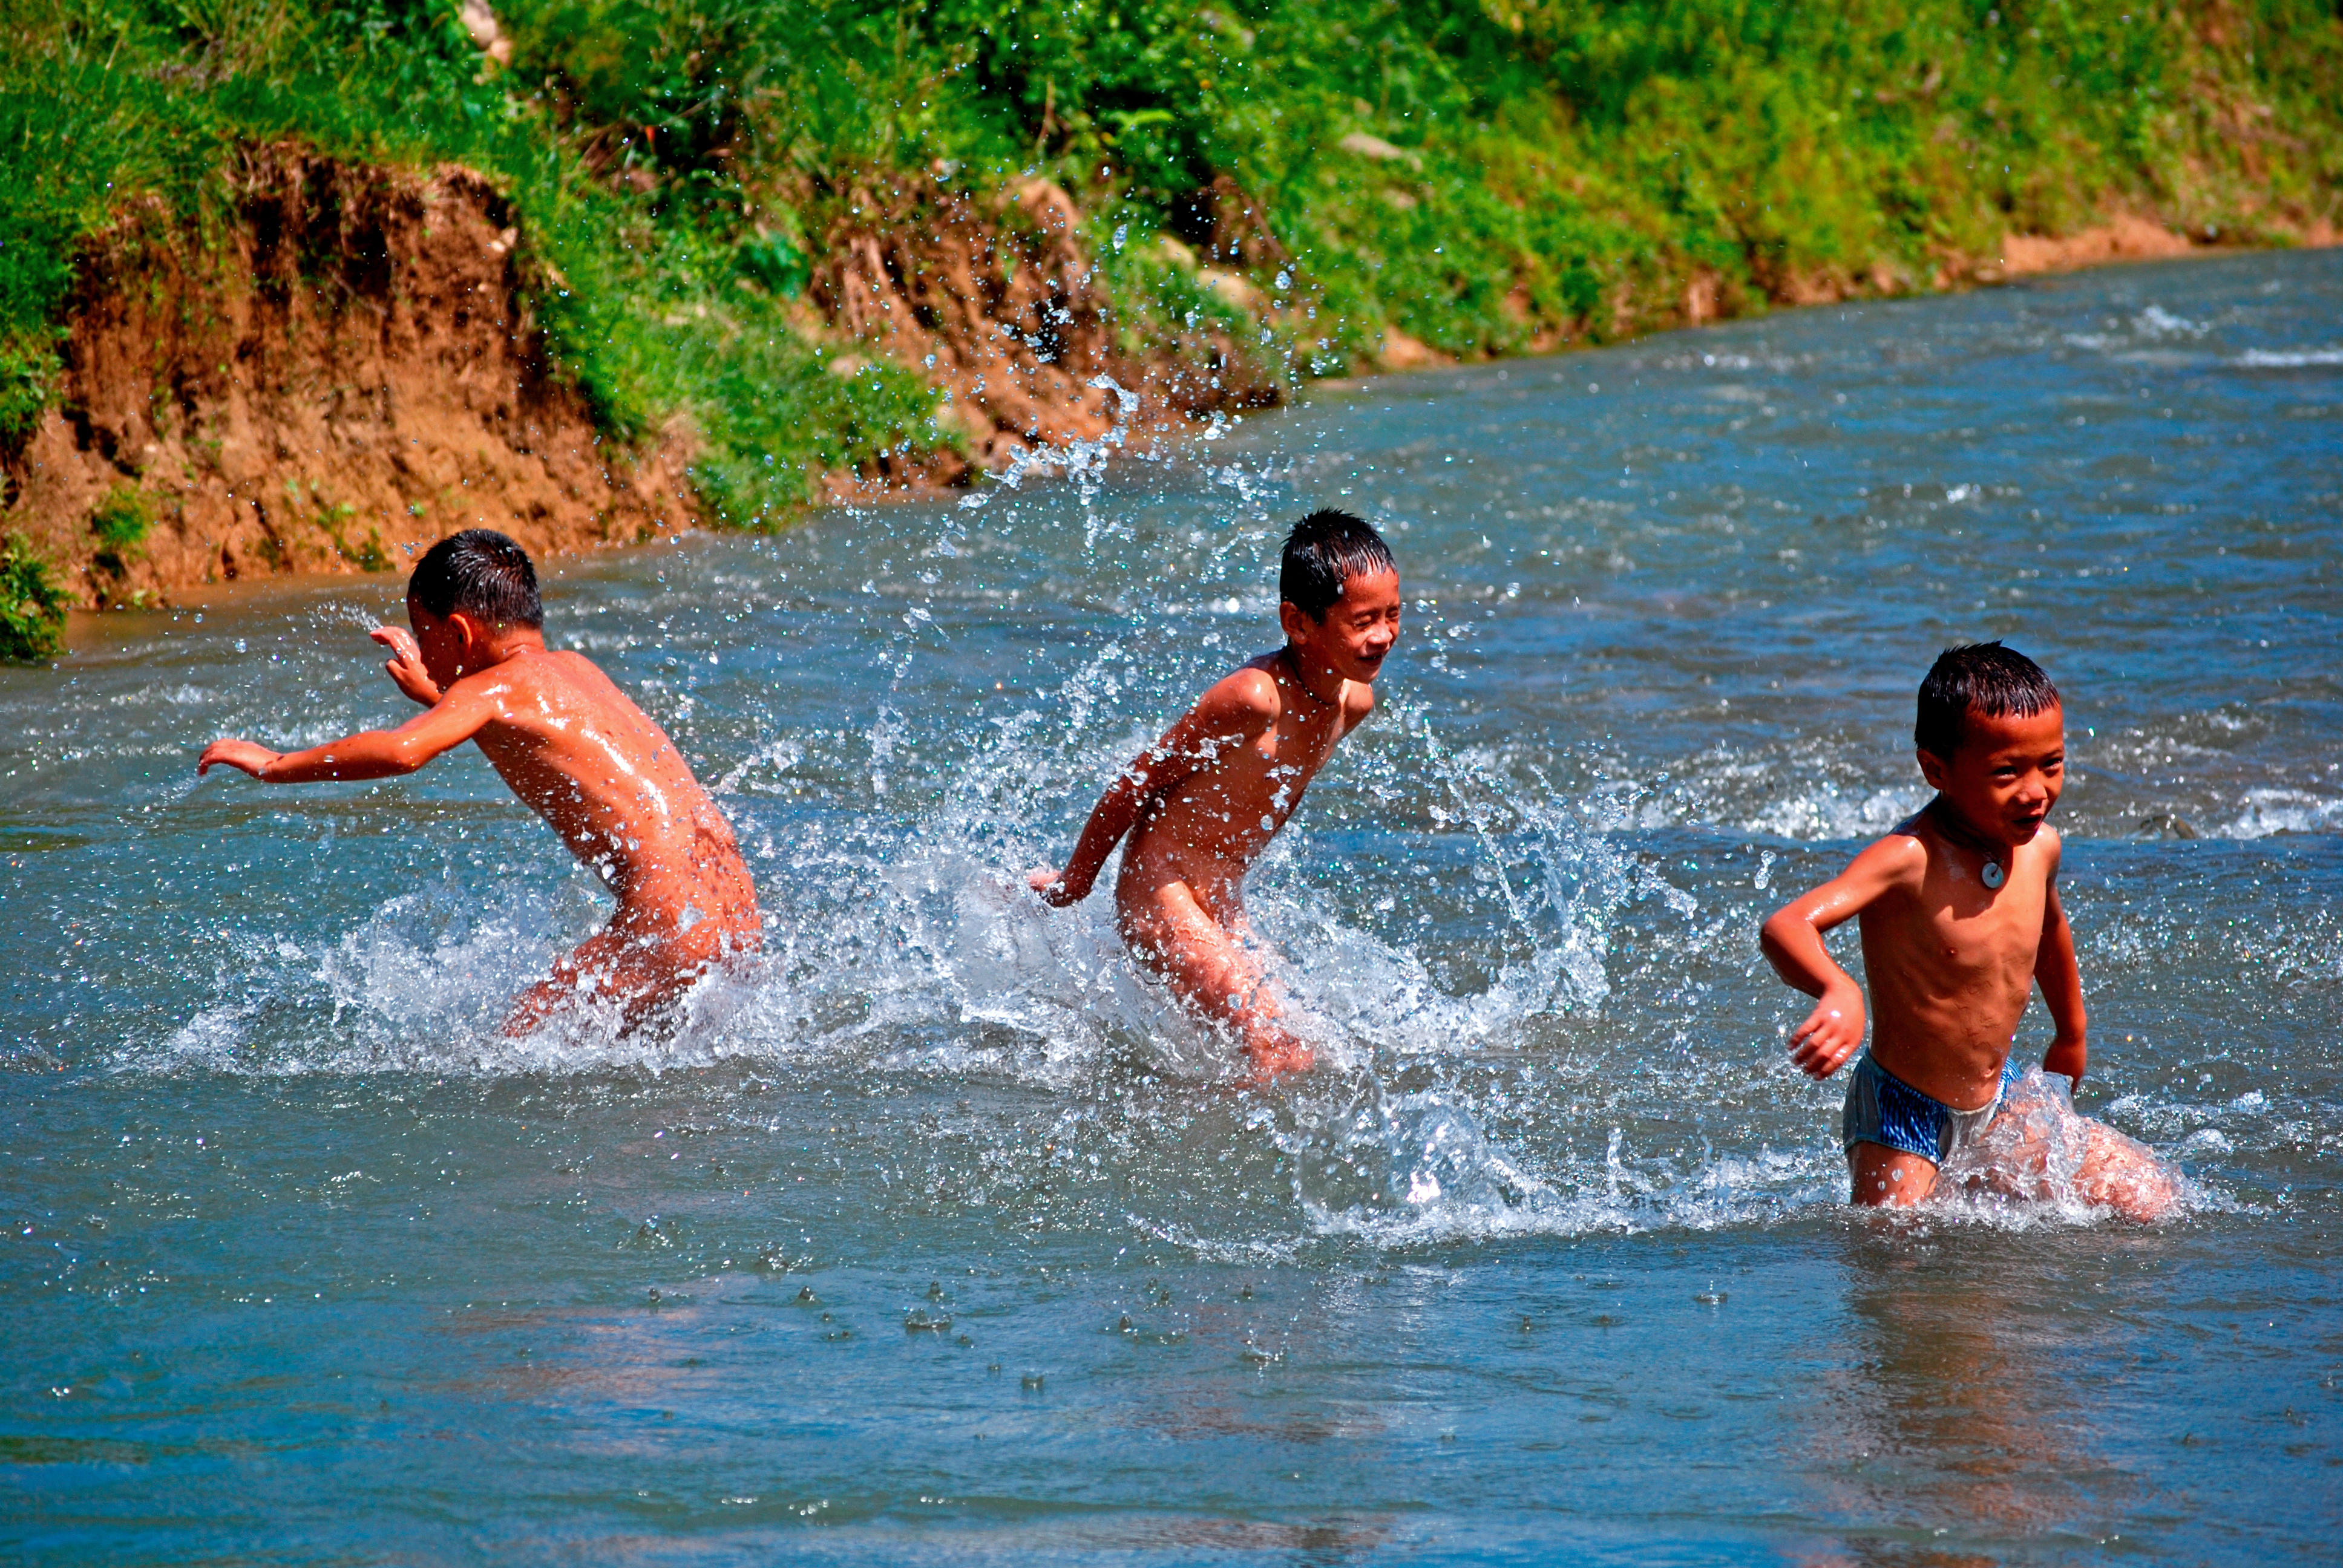 农村戏水的村童图片